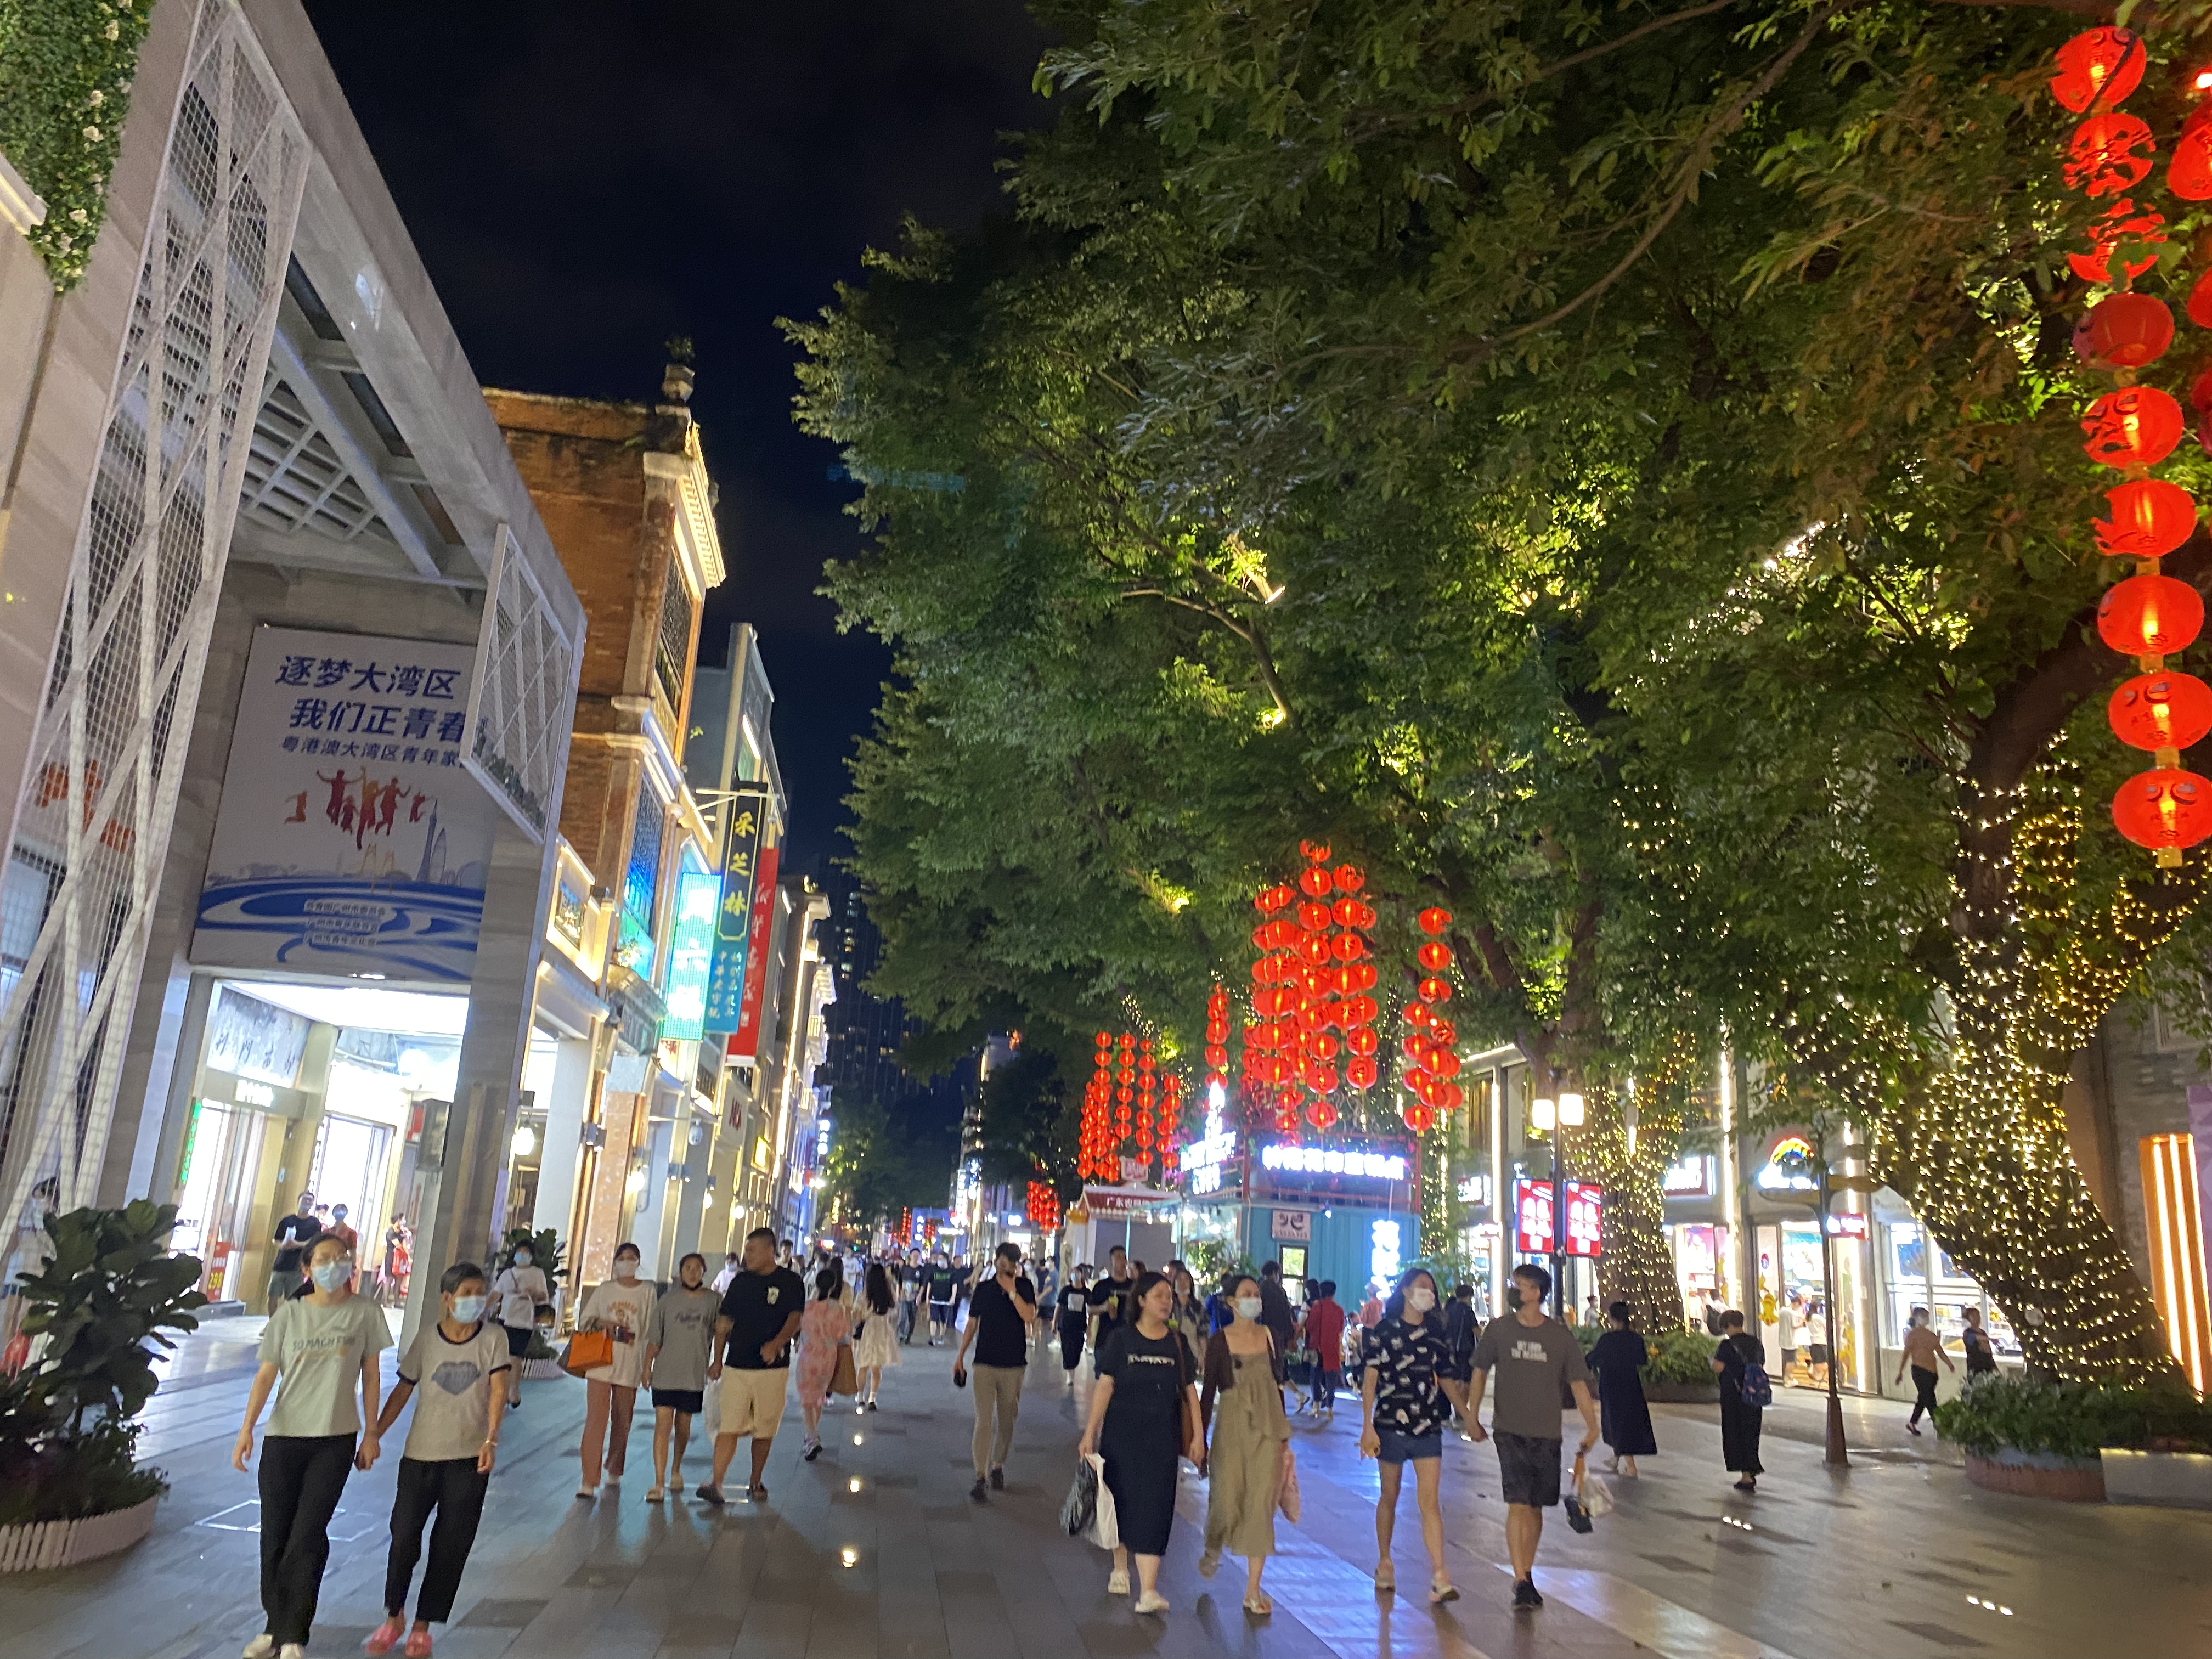 广州的北京路步行街,真是太热闹了!深更半夜竟然还有那么多人